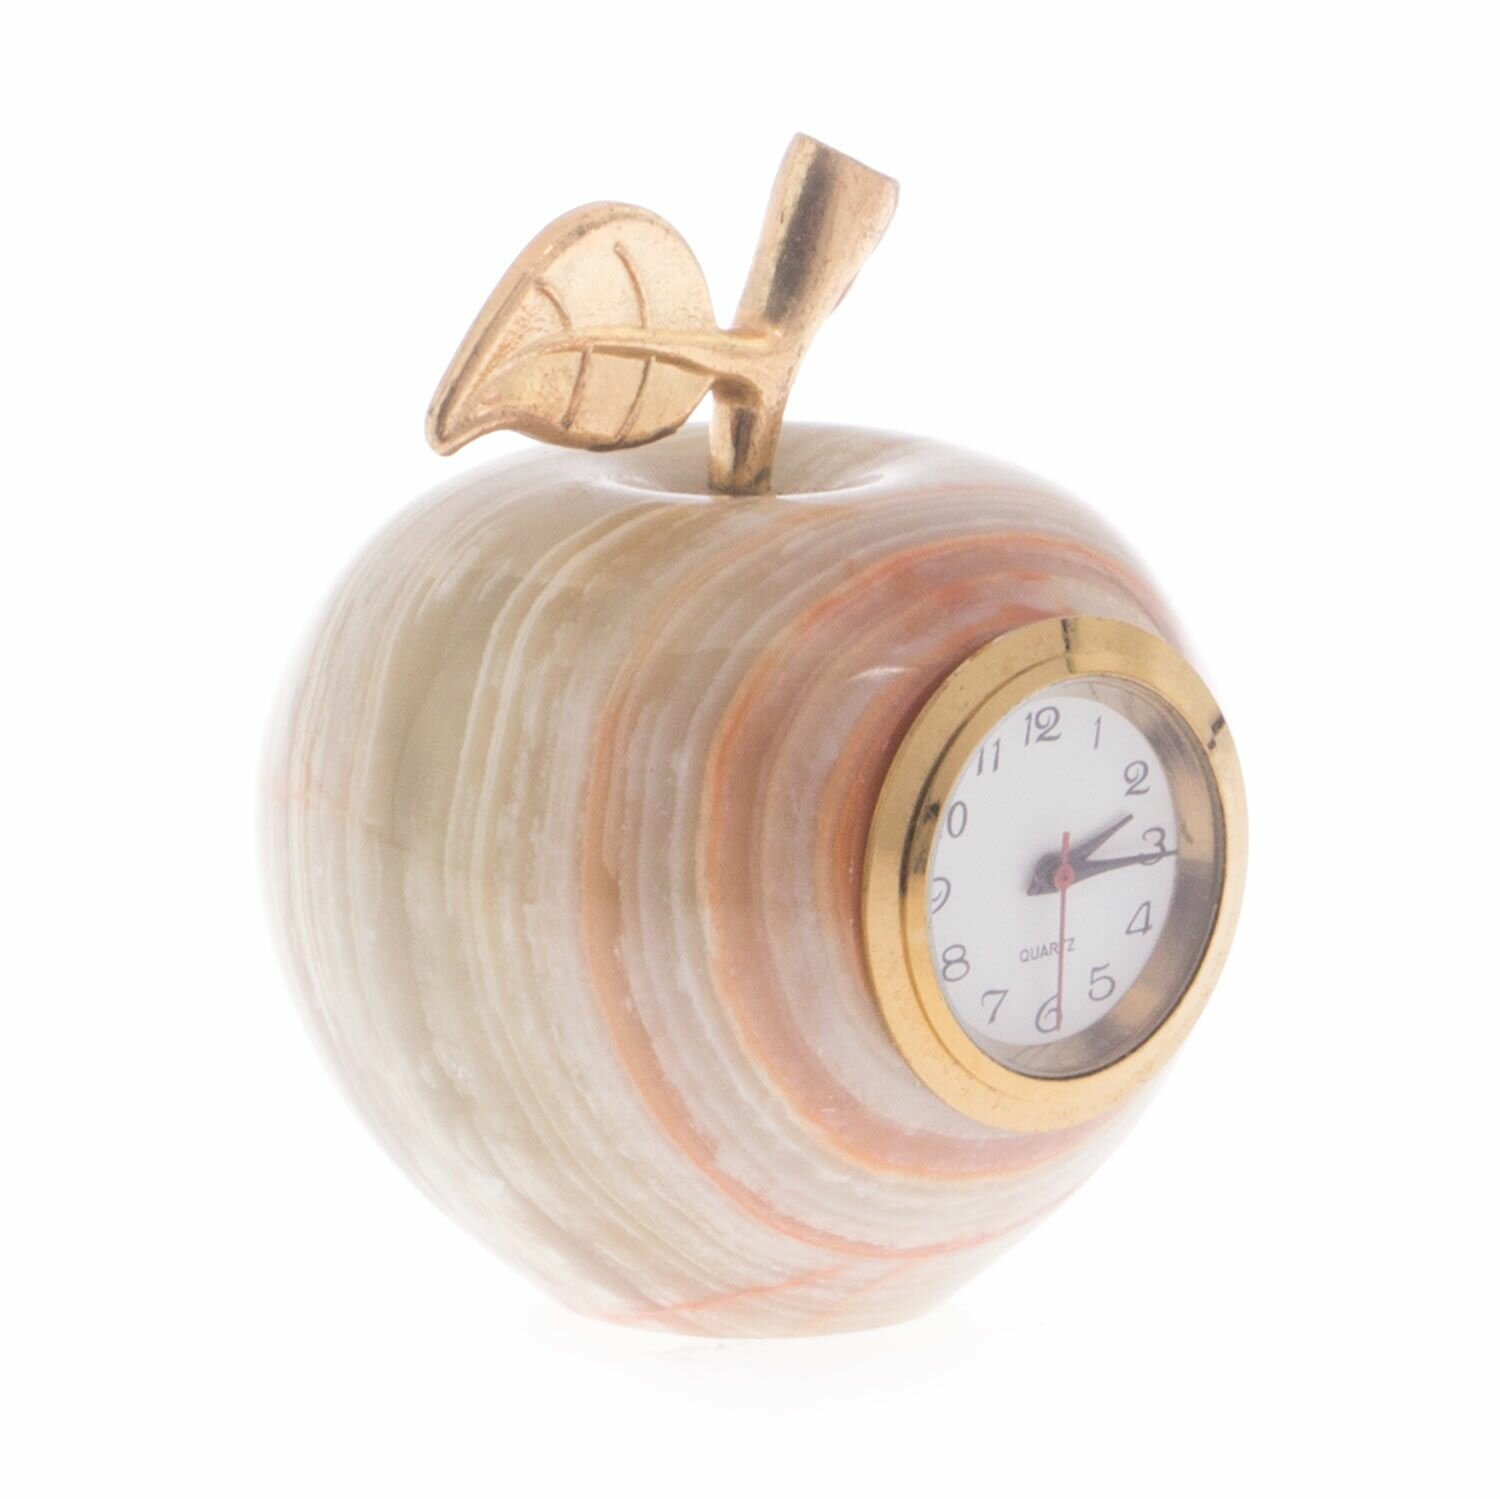 Часы сувенирные "Яблоко" камень оникс 5,2х6,1 см (2) 121896